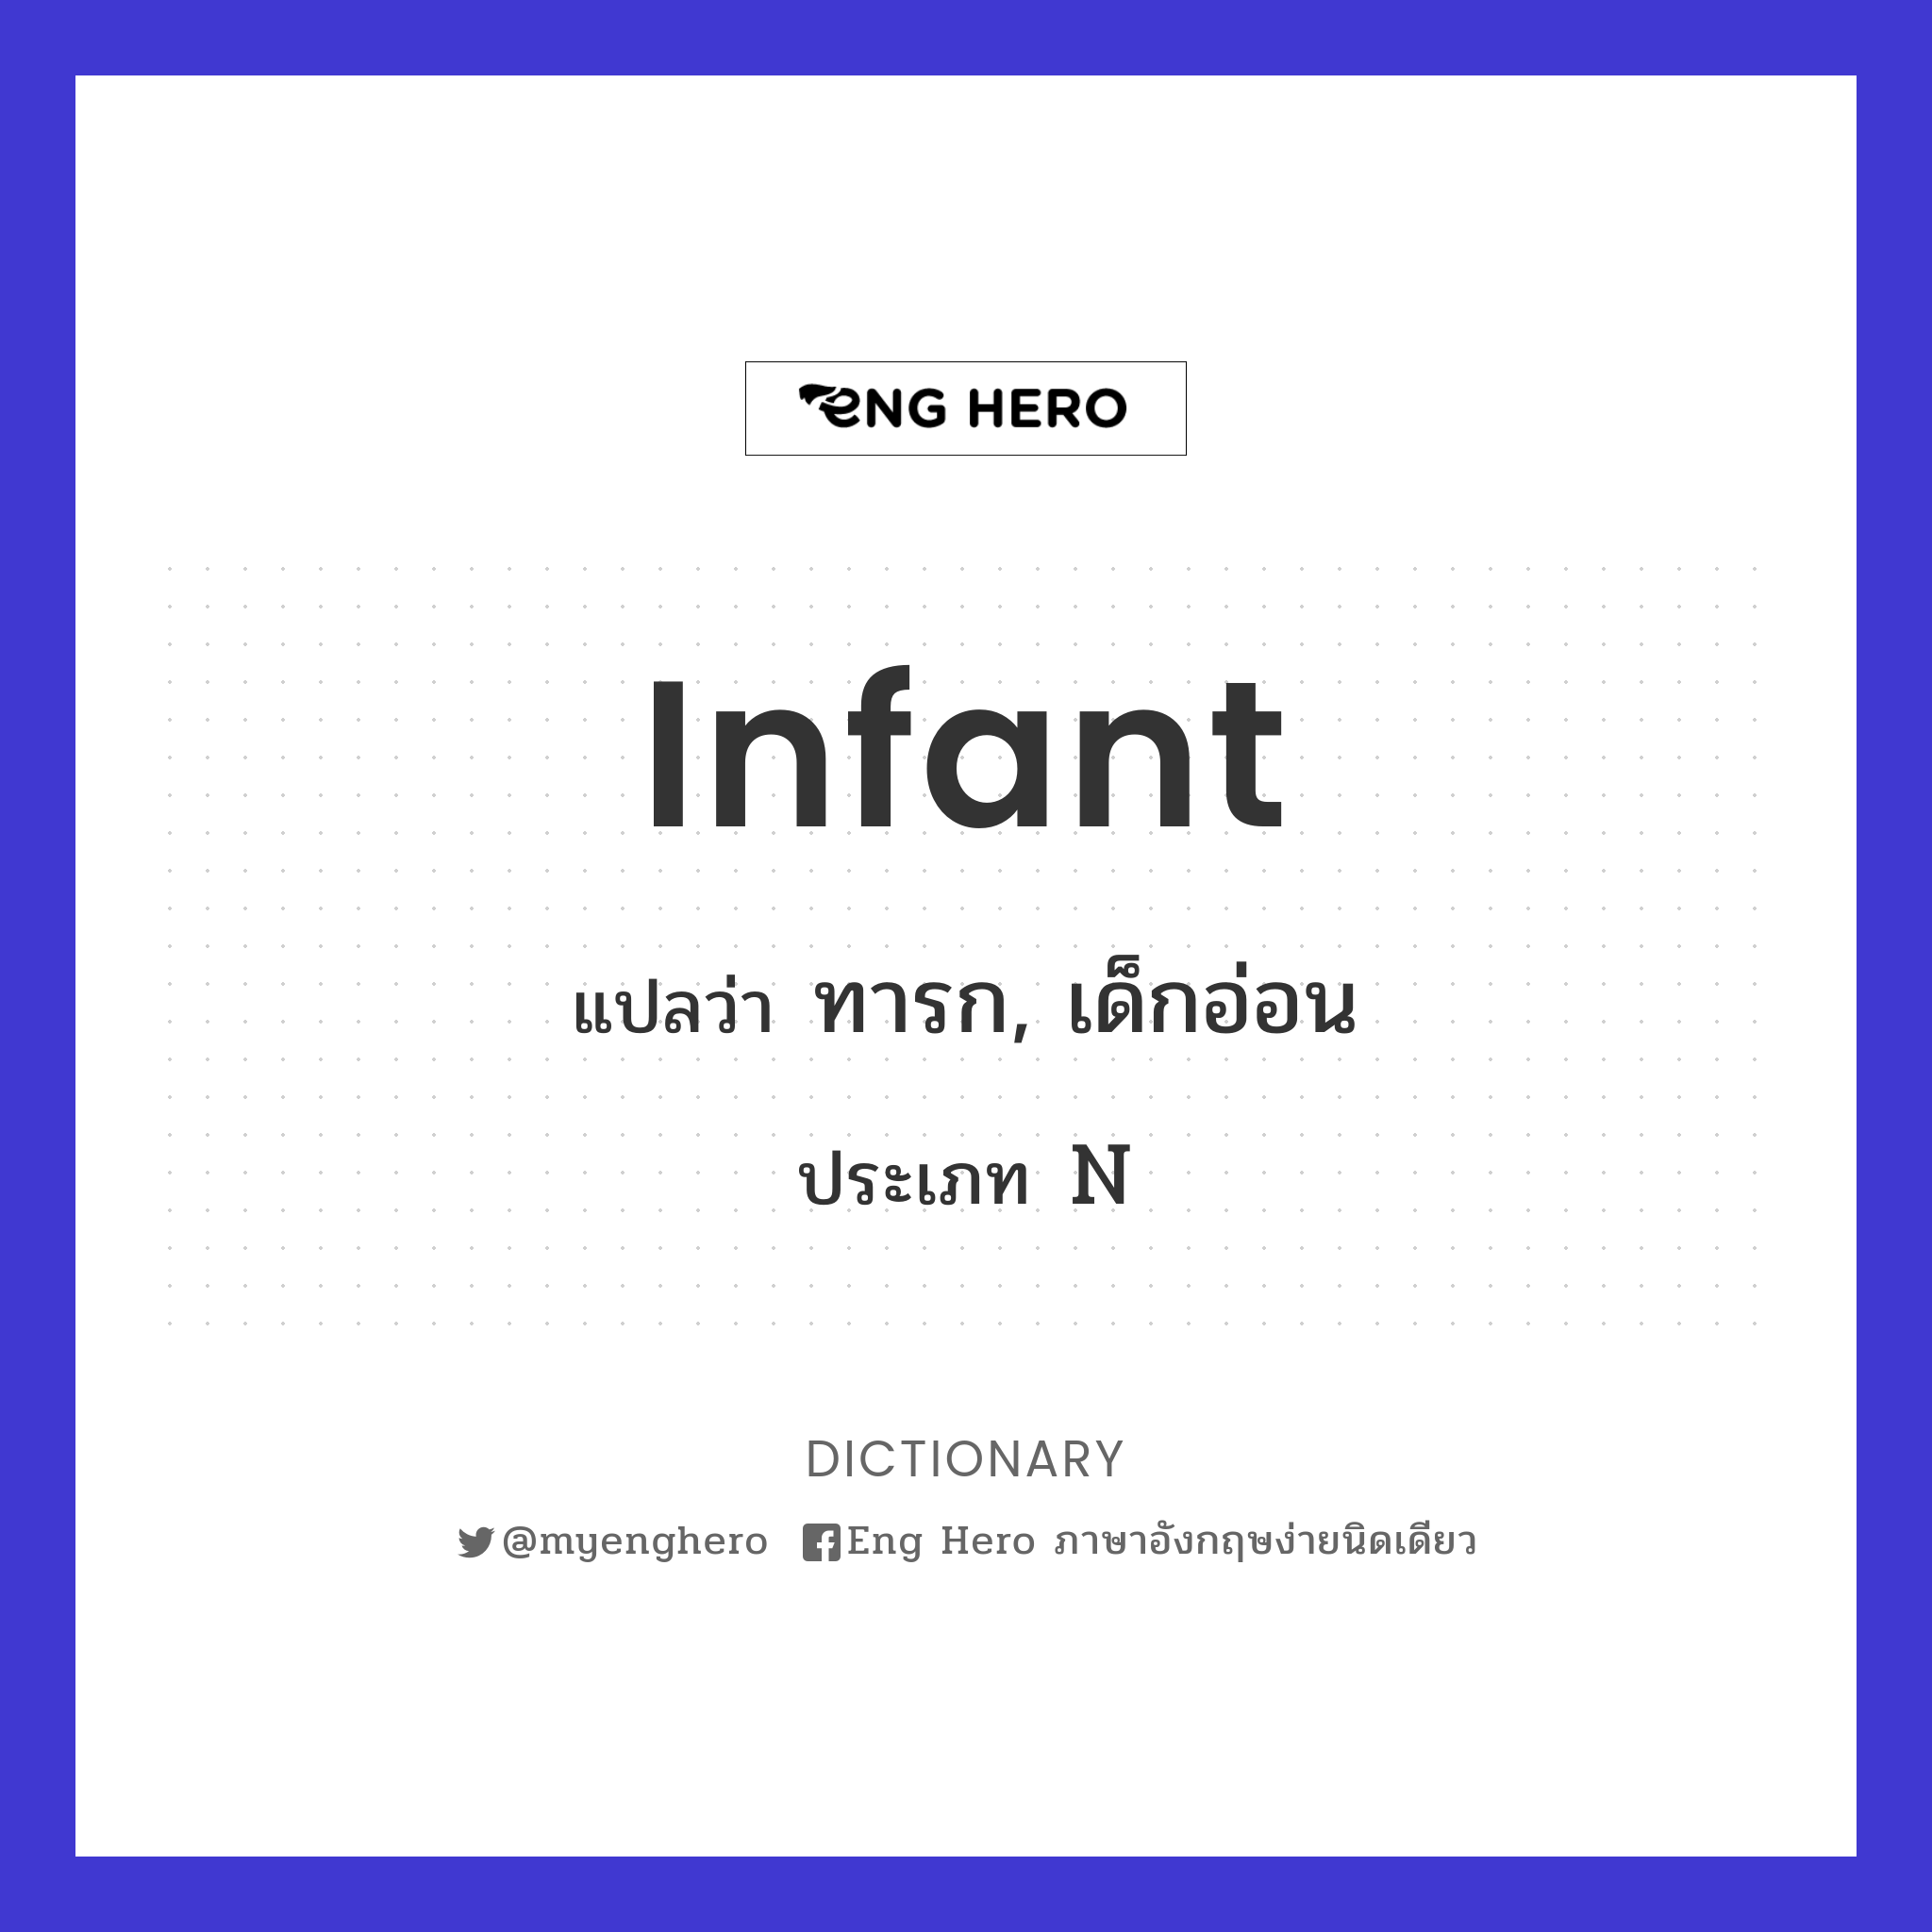 infant